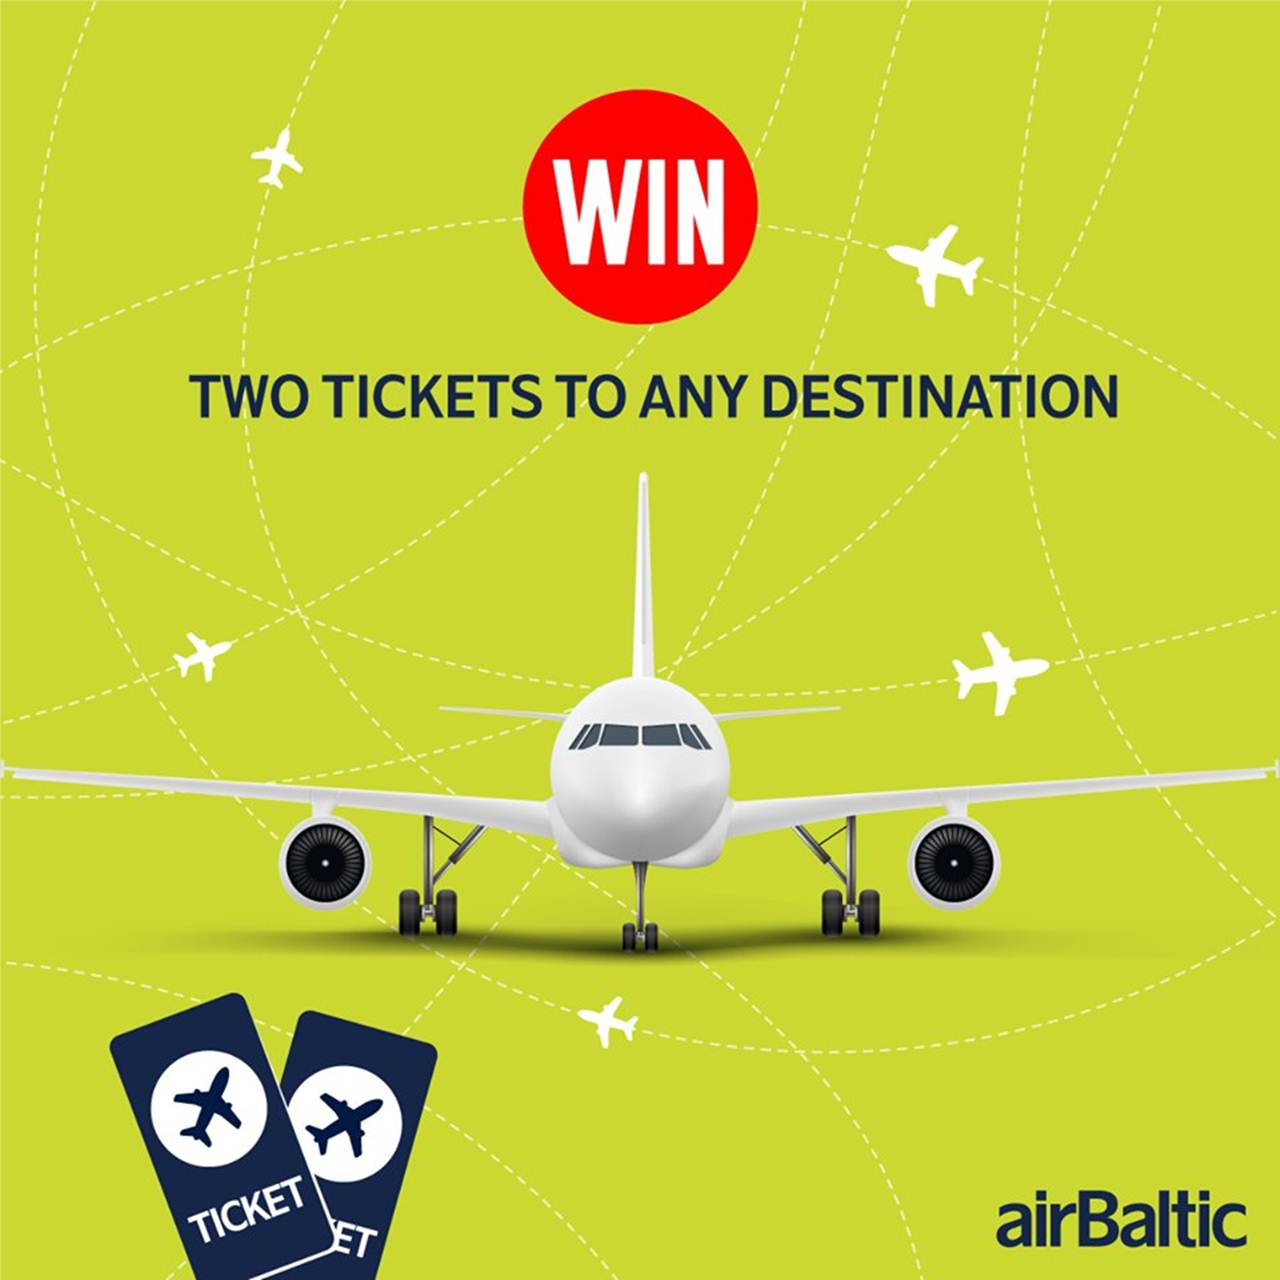 Passatempo da companhia airBaltic para ganhar 2 viagens de avião